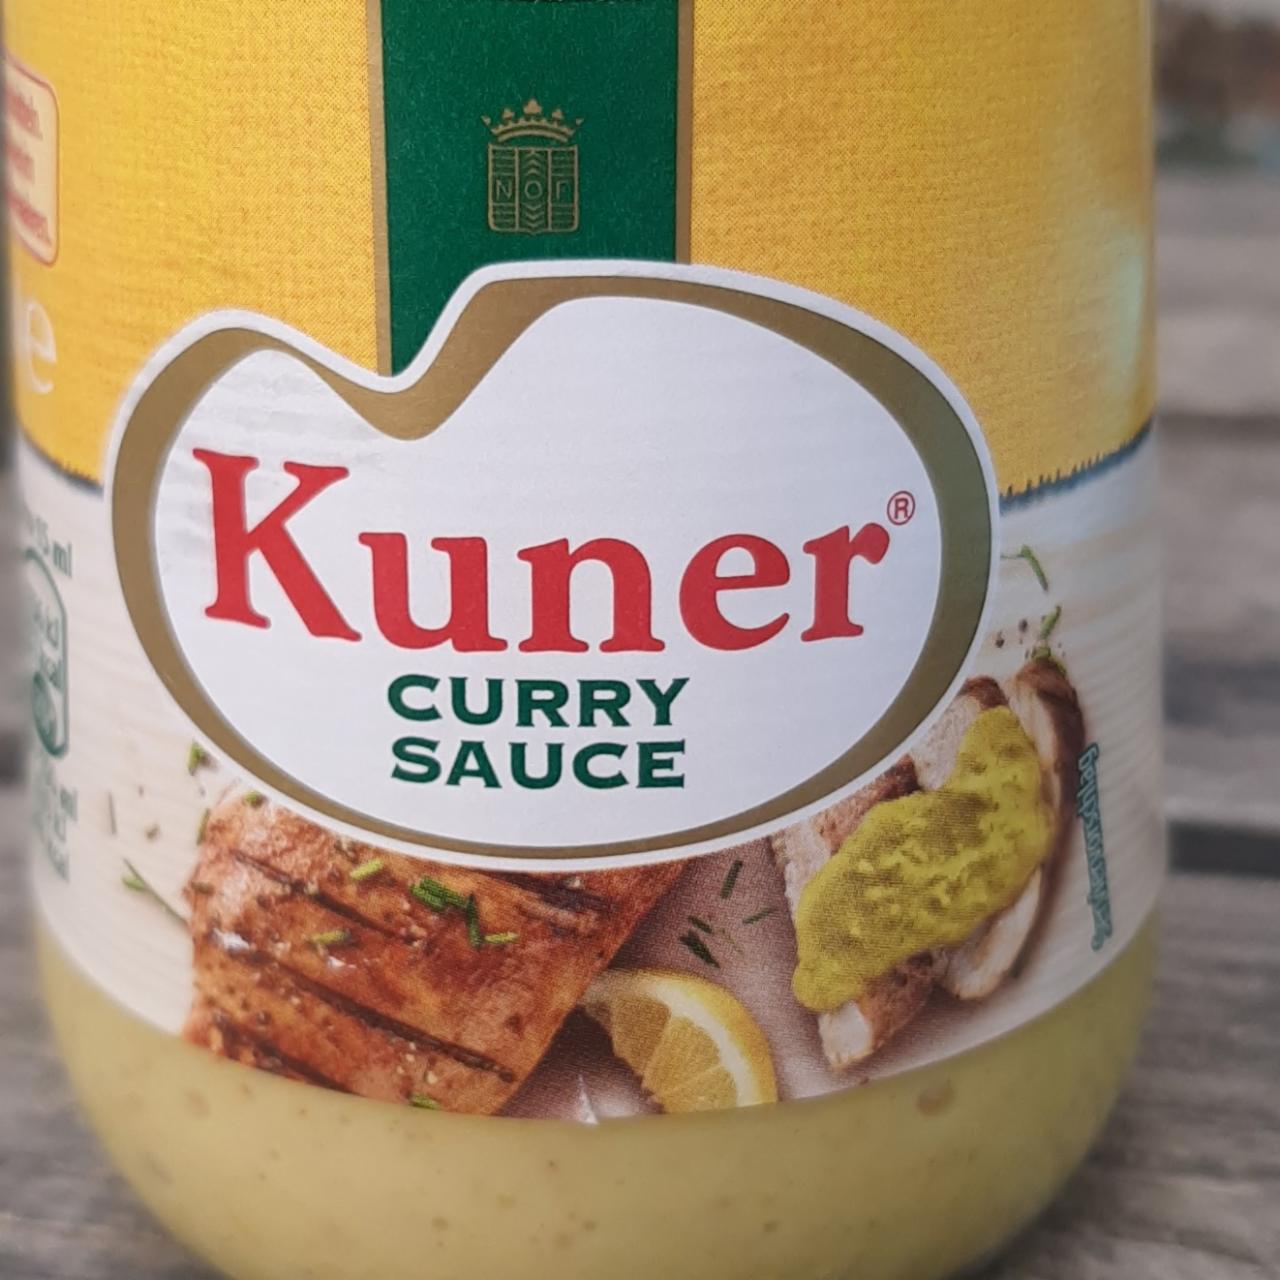 Fotografie - Kuner curry sauce